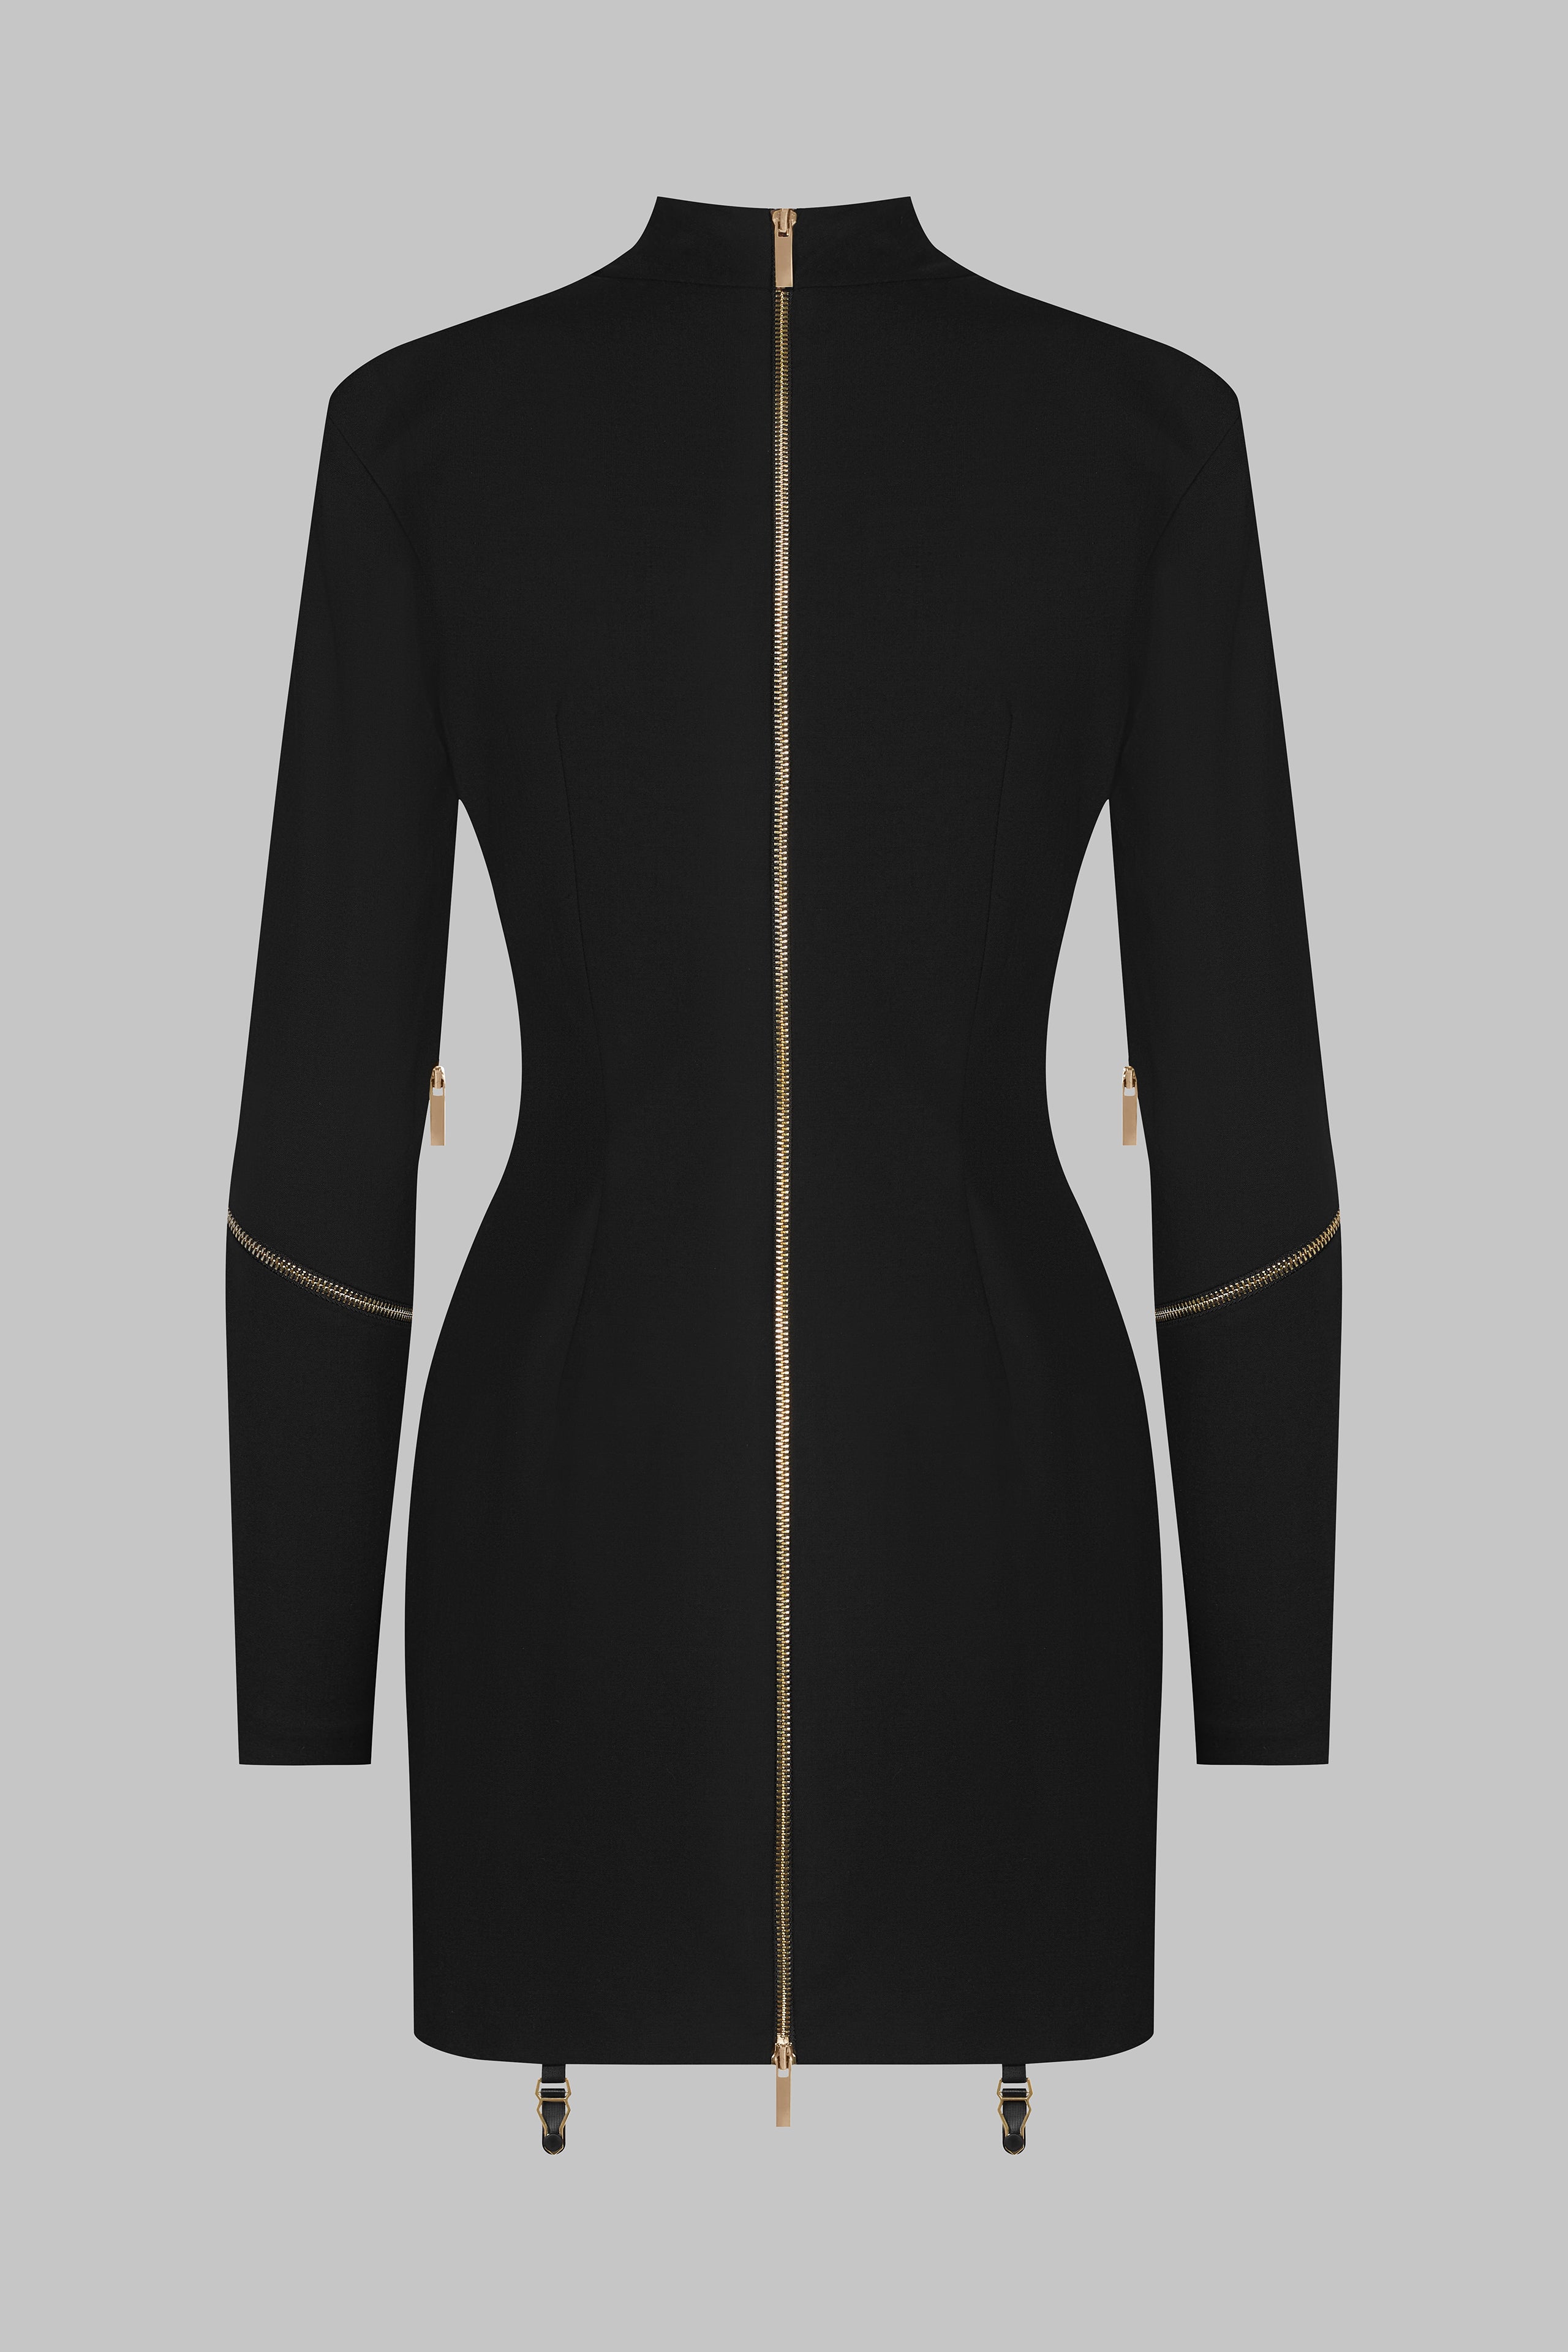 018 - Robe courte manches longues à zip en laine